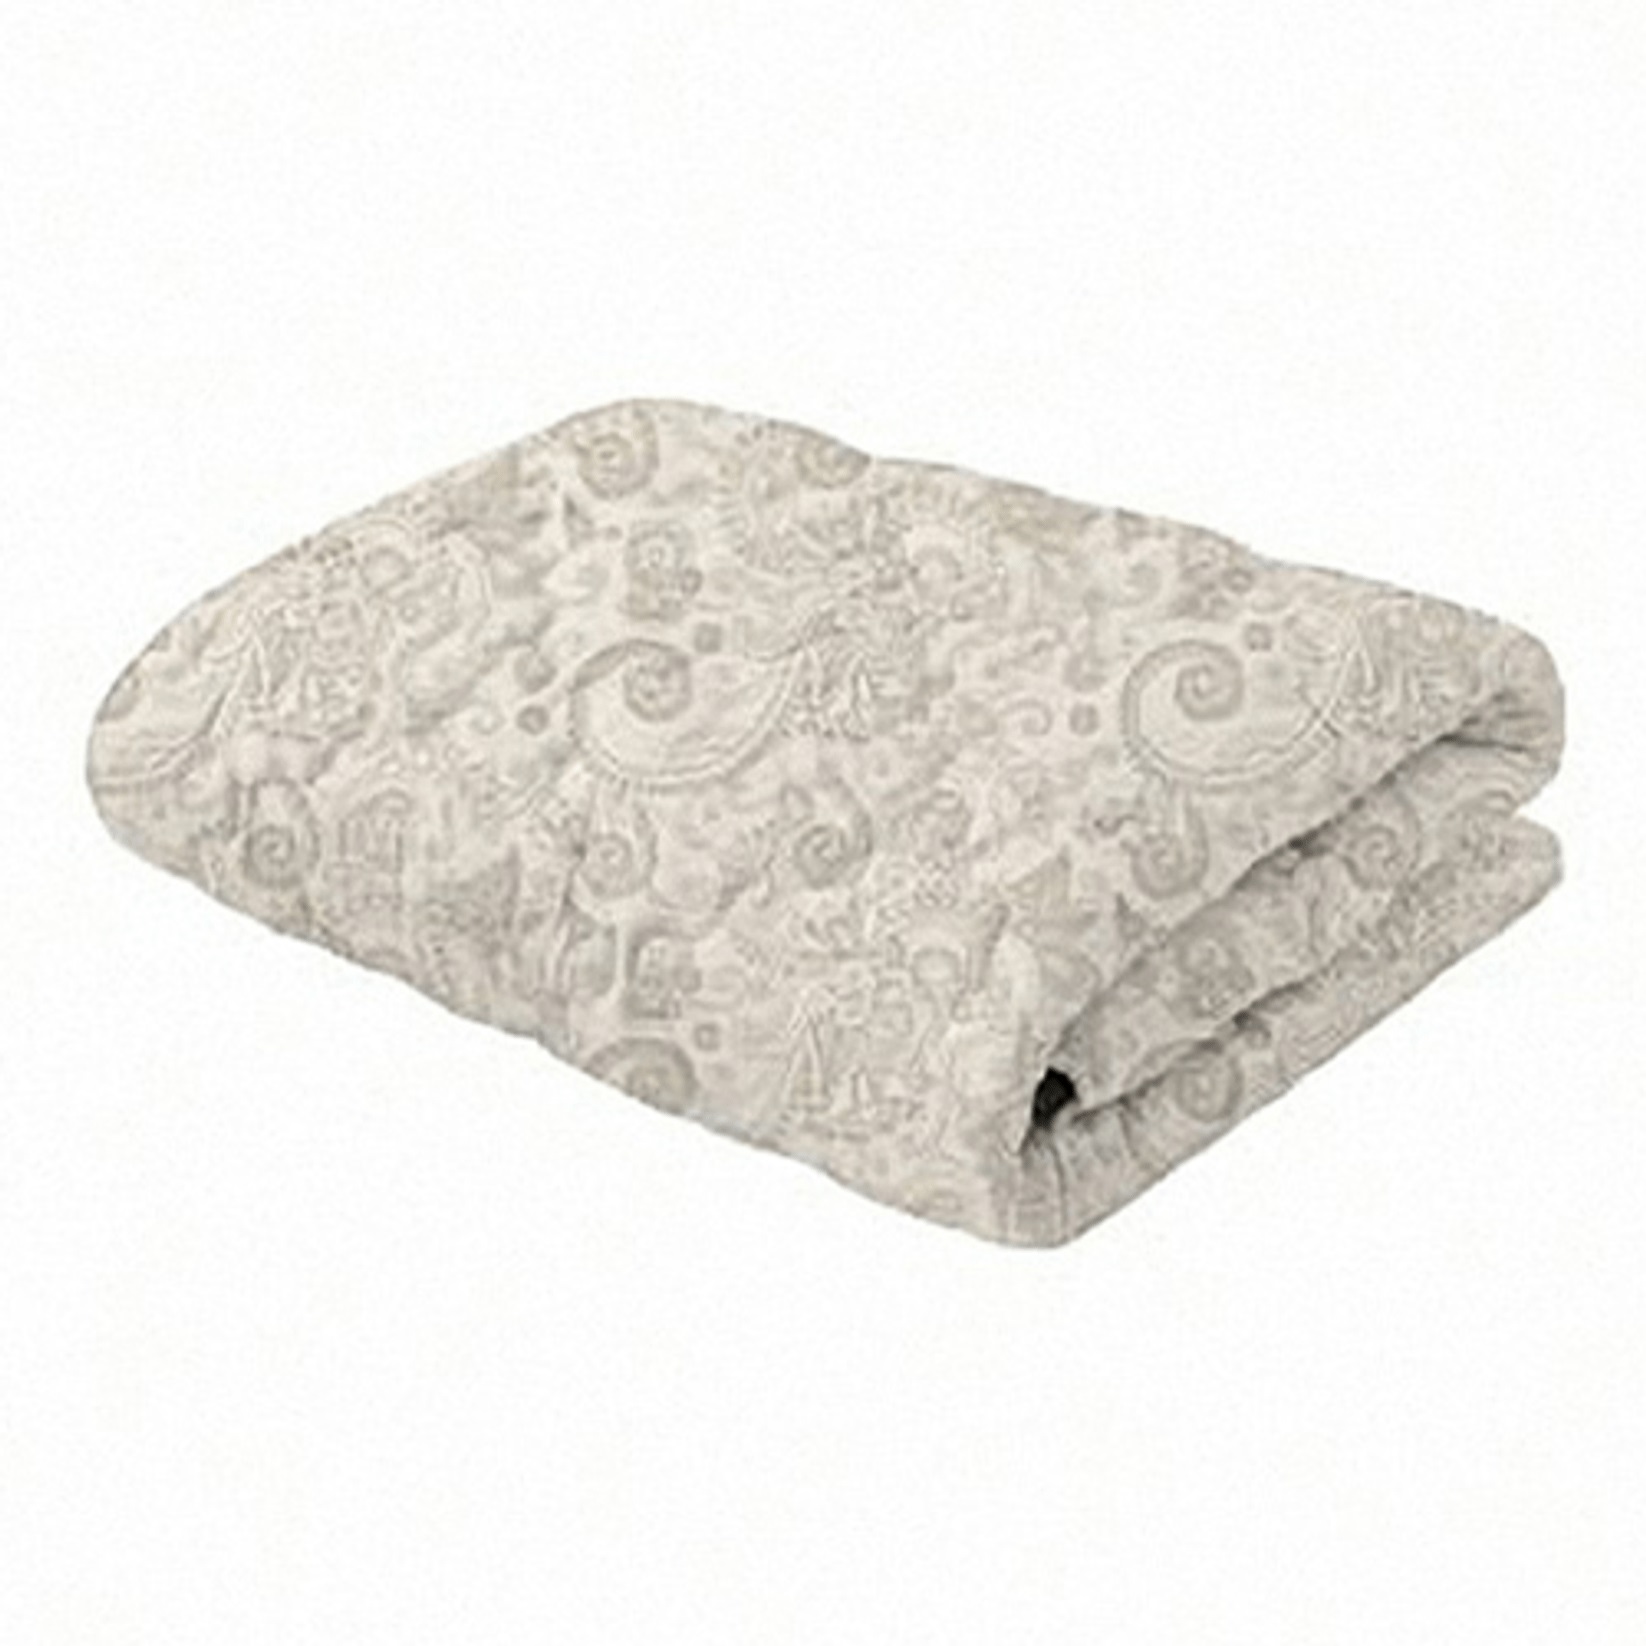 фото Одеяло самойловский текстиль 172x205 см из шерсти гималайской козы